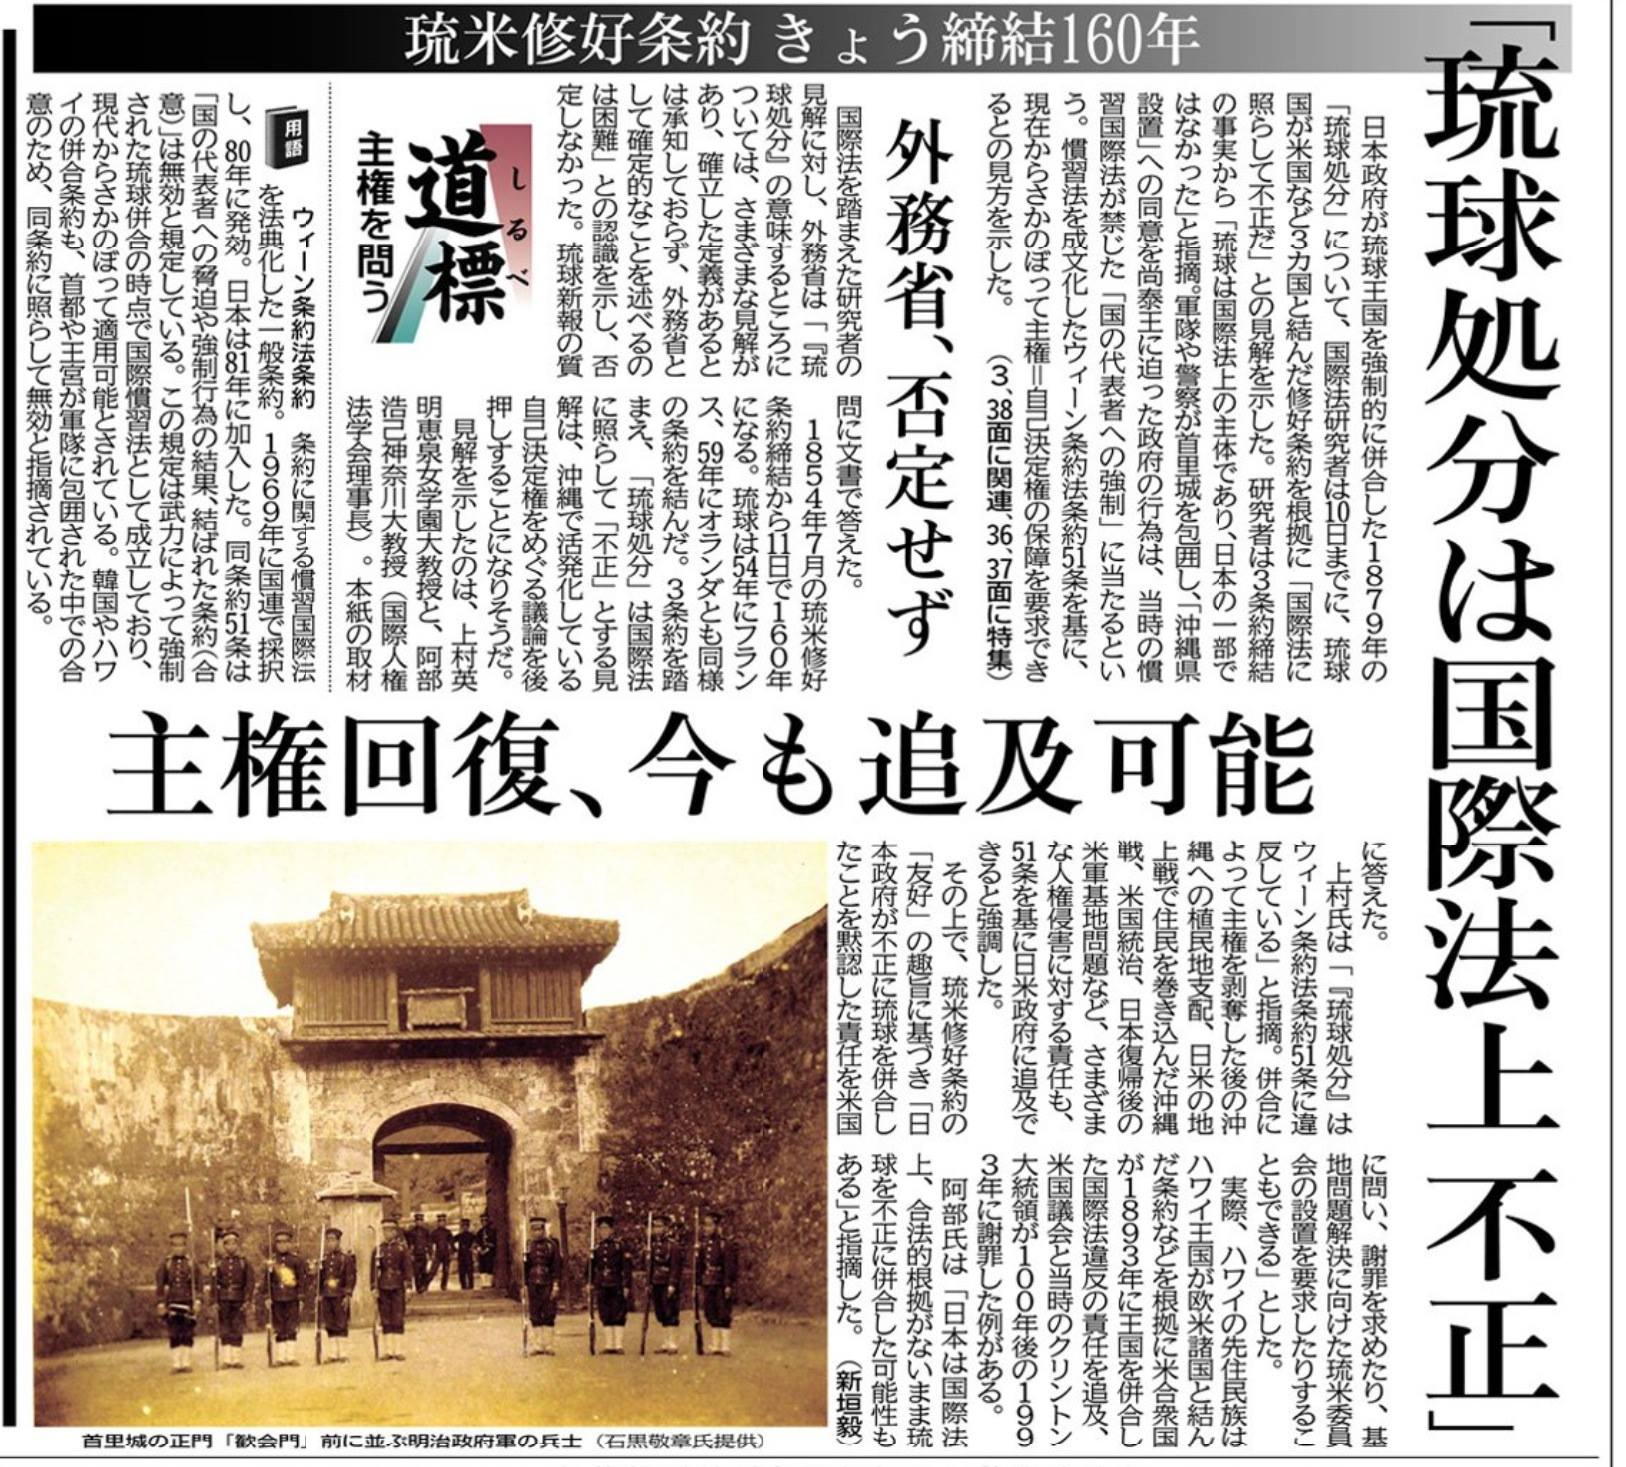 沖縄対策本部□新たな沖縄の歴史戦「琉球処分違法論」と無防備な日本